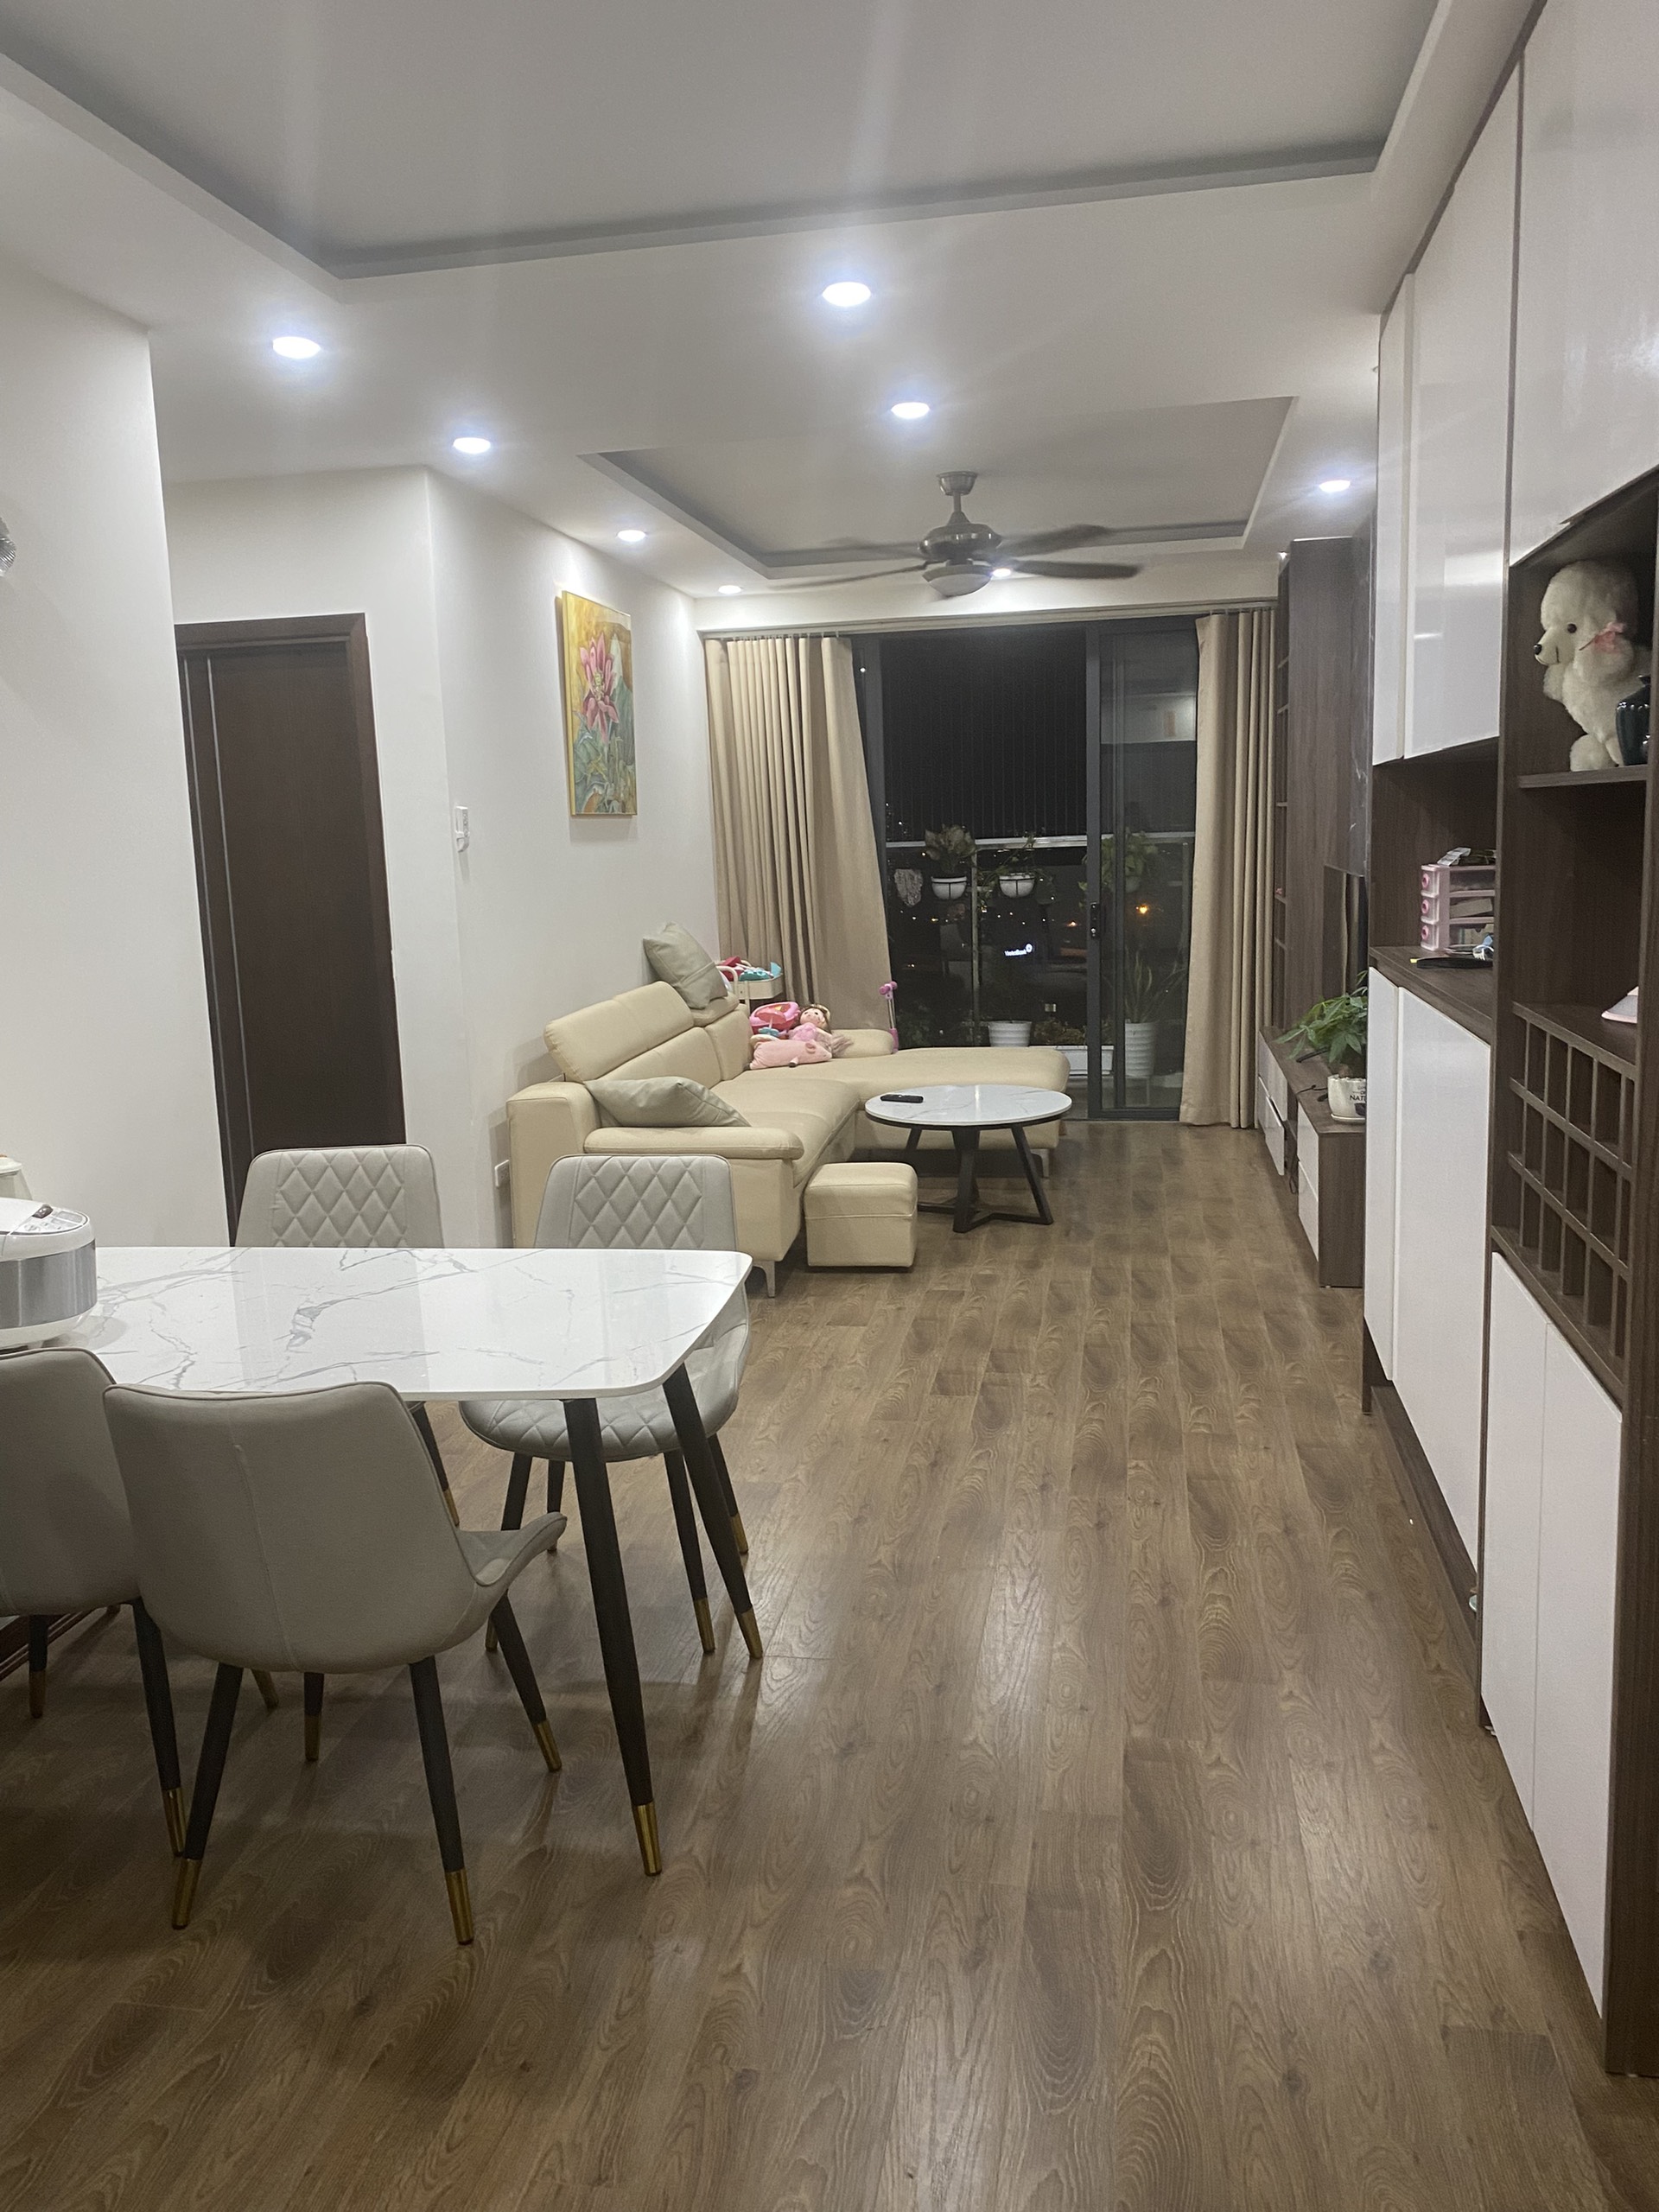 Cho thuê căn hộ tại An Bình Plaza với phong cách sống hiện đại, đầy đủ tiện nghi và dịch vụ chất lượng sẽ mang lại trải nghiệm tuyệt vời cho bạn và gia đình.